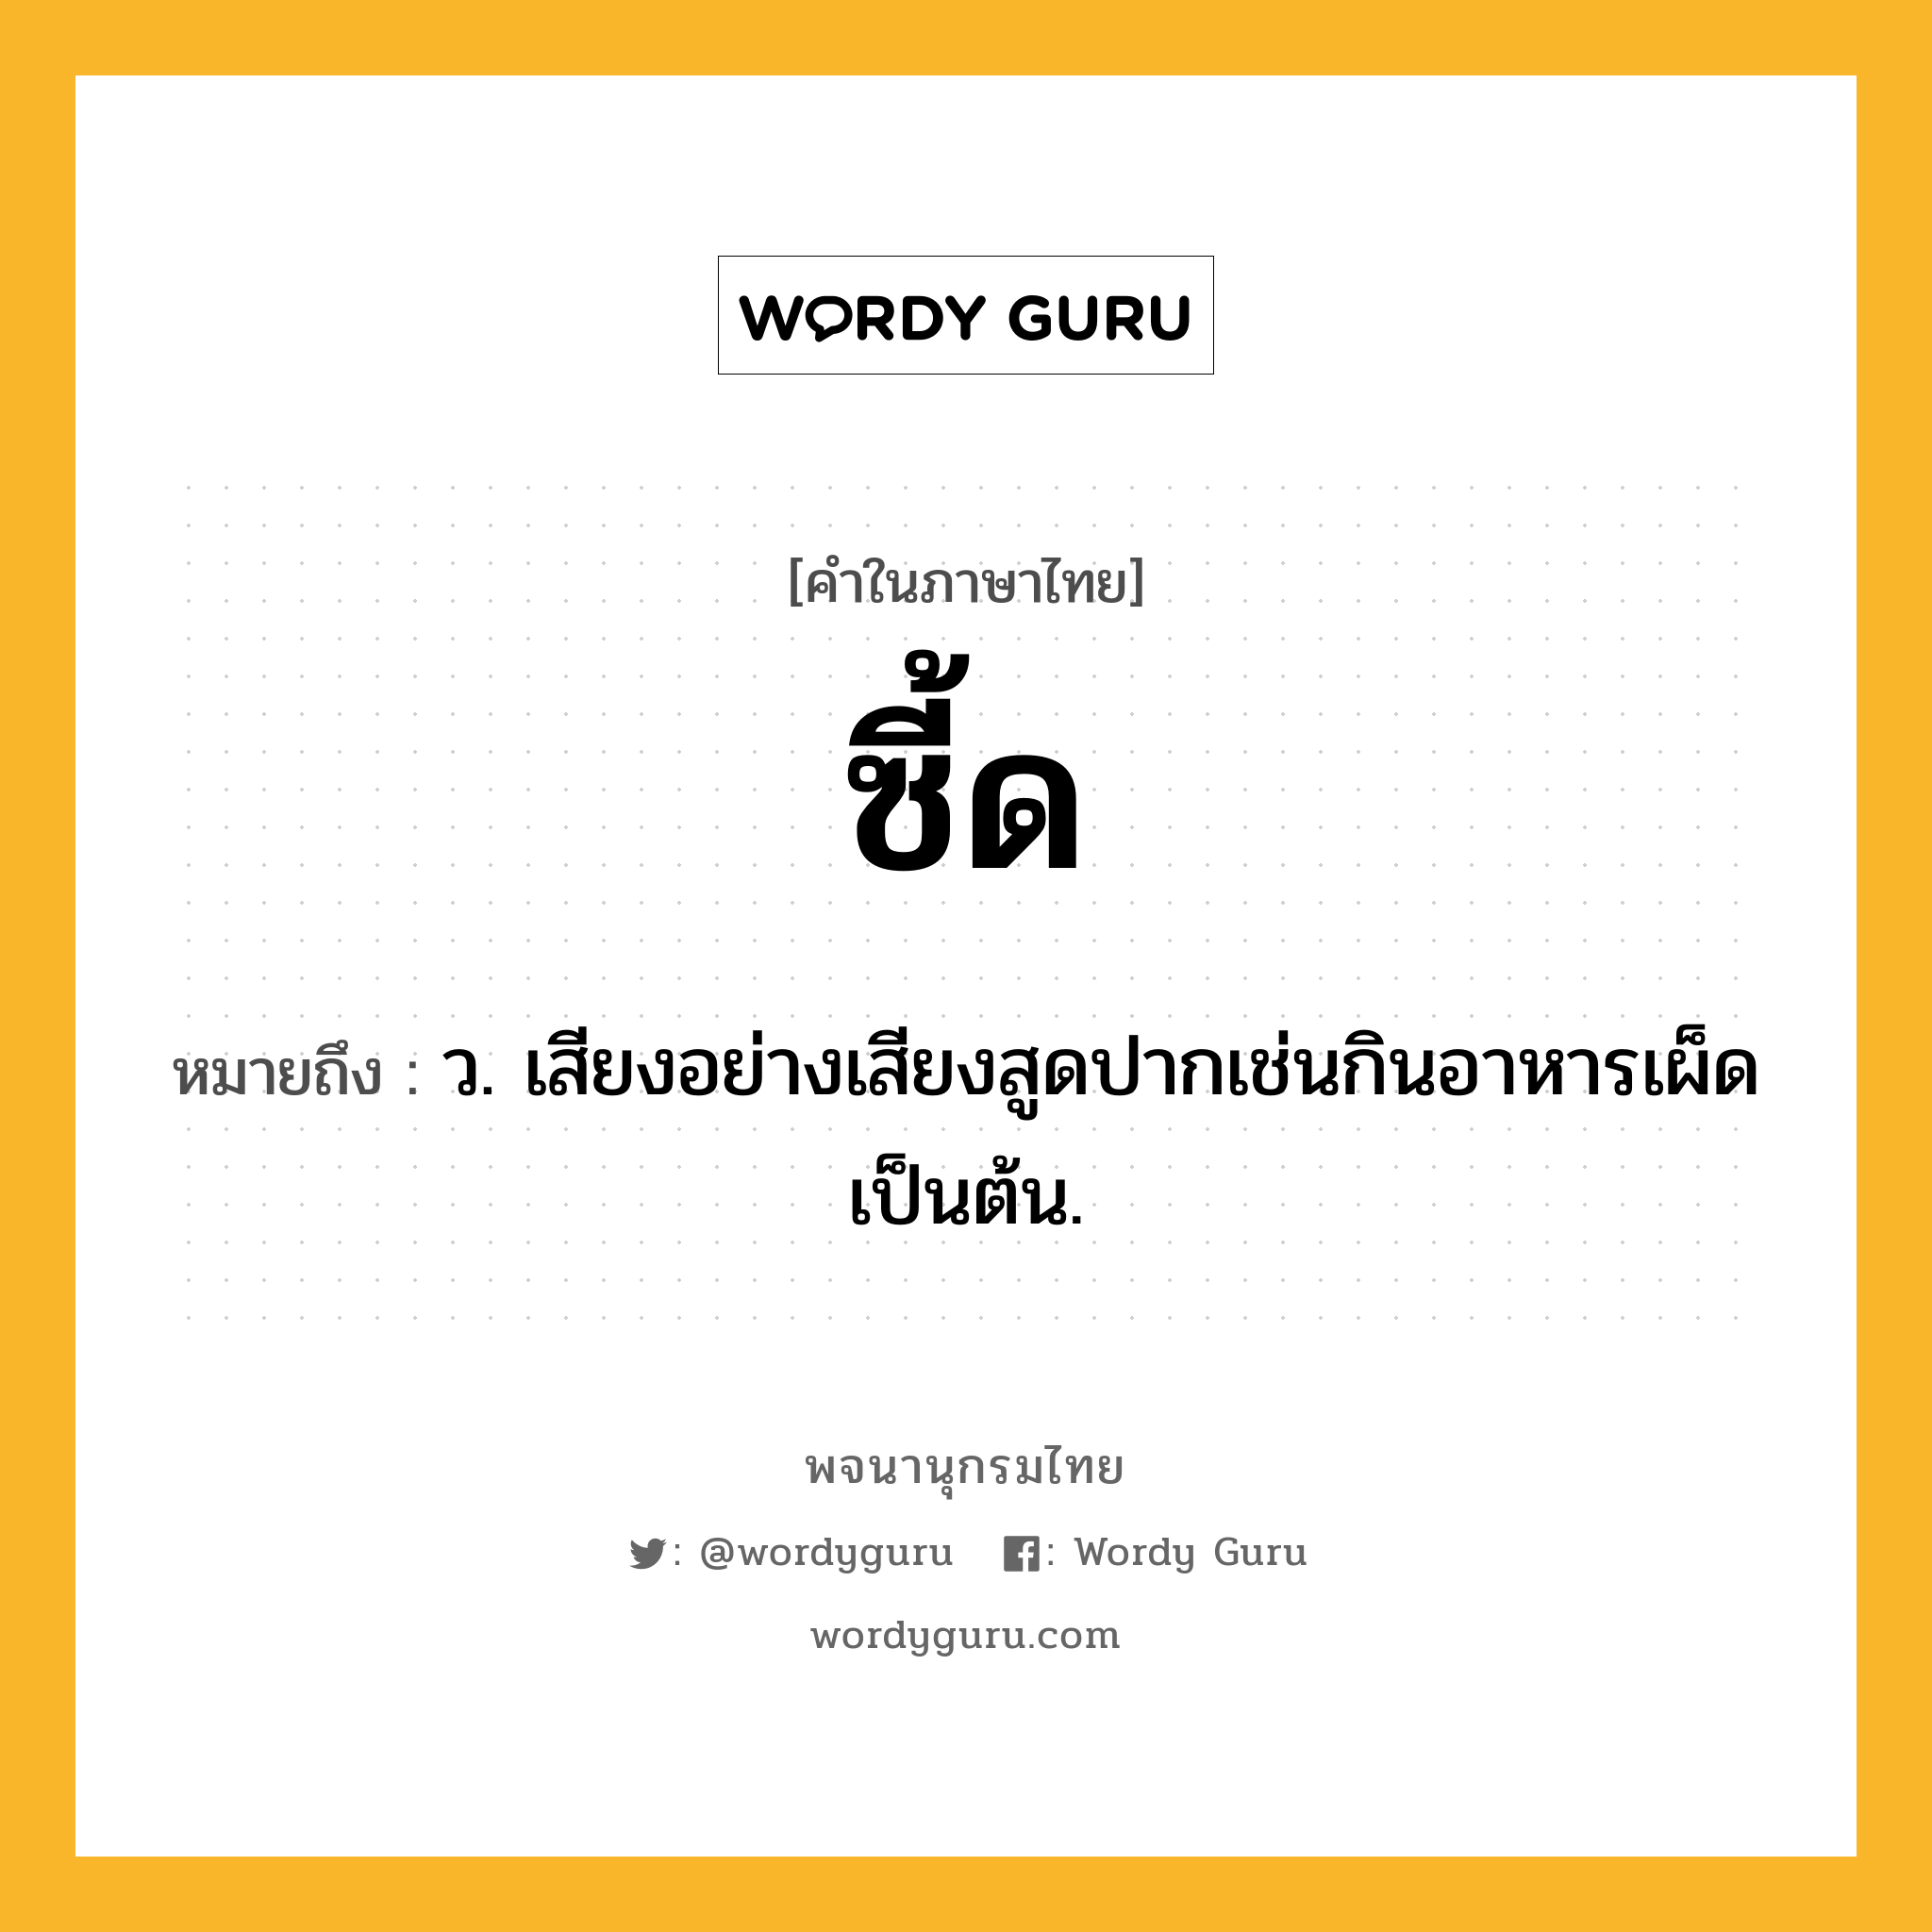 ซี้ด ความหมาย หมายถึงอะไร?, คำในภาษาไทย ซี้ด หมายถึง ว. เสียงอย่างเสียงสูดปากเช่นกินอาหารเผ็ดเป็นต้น.